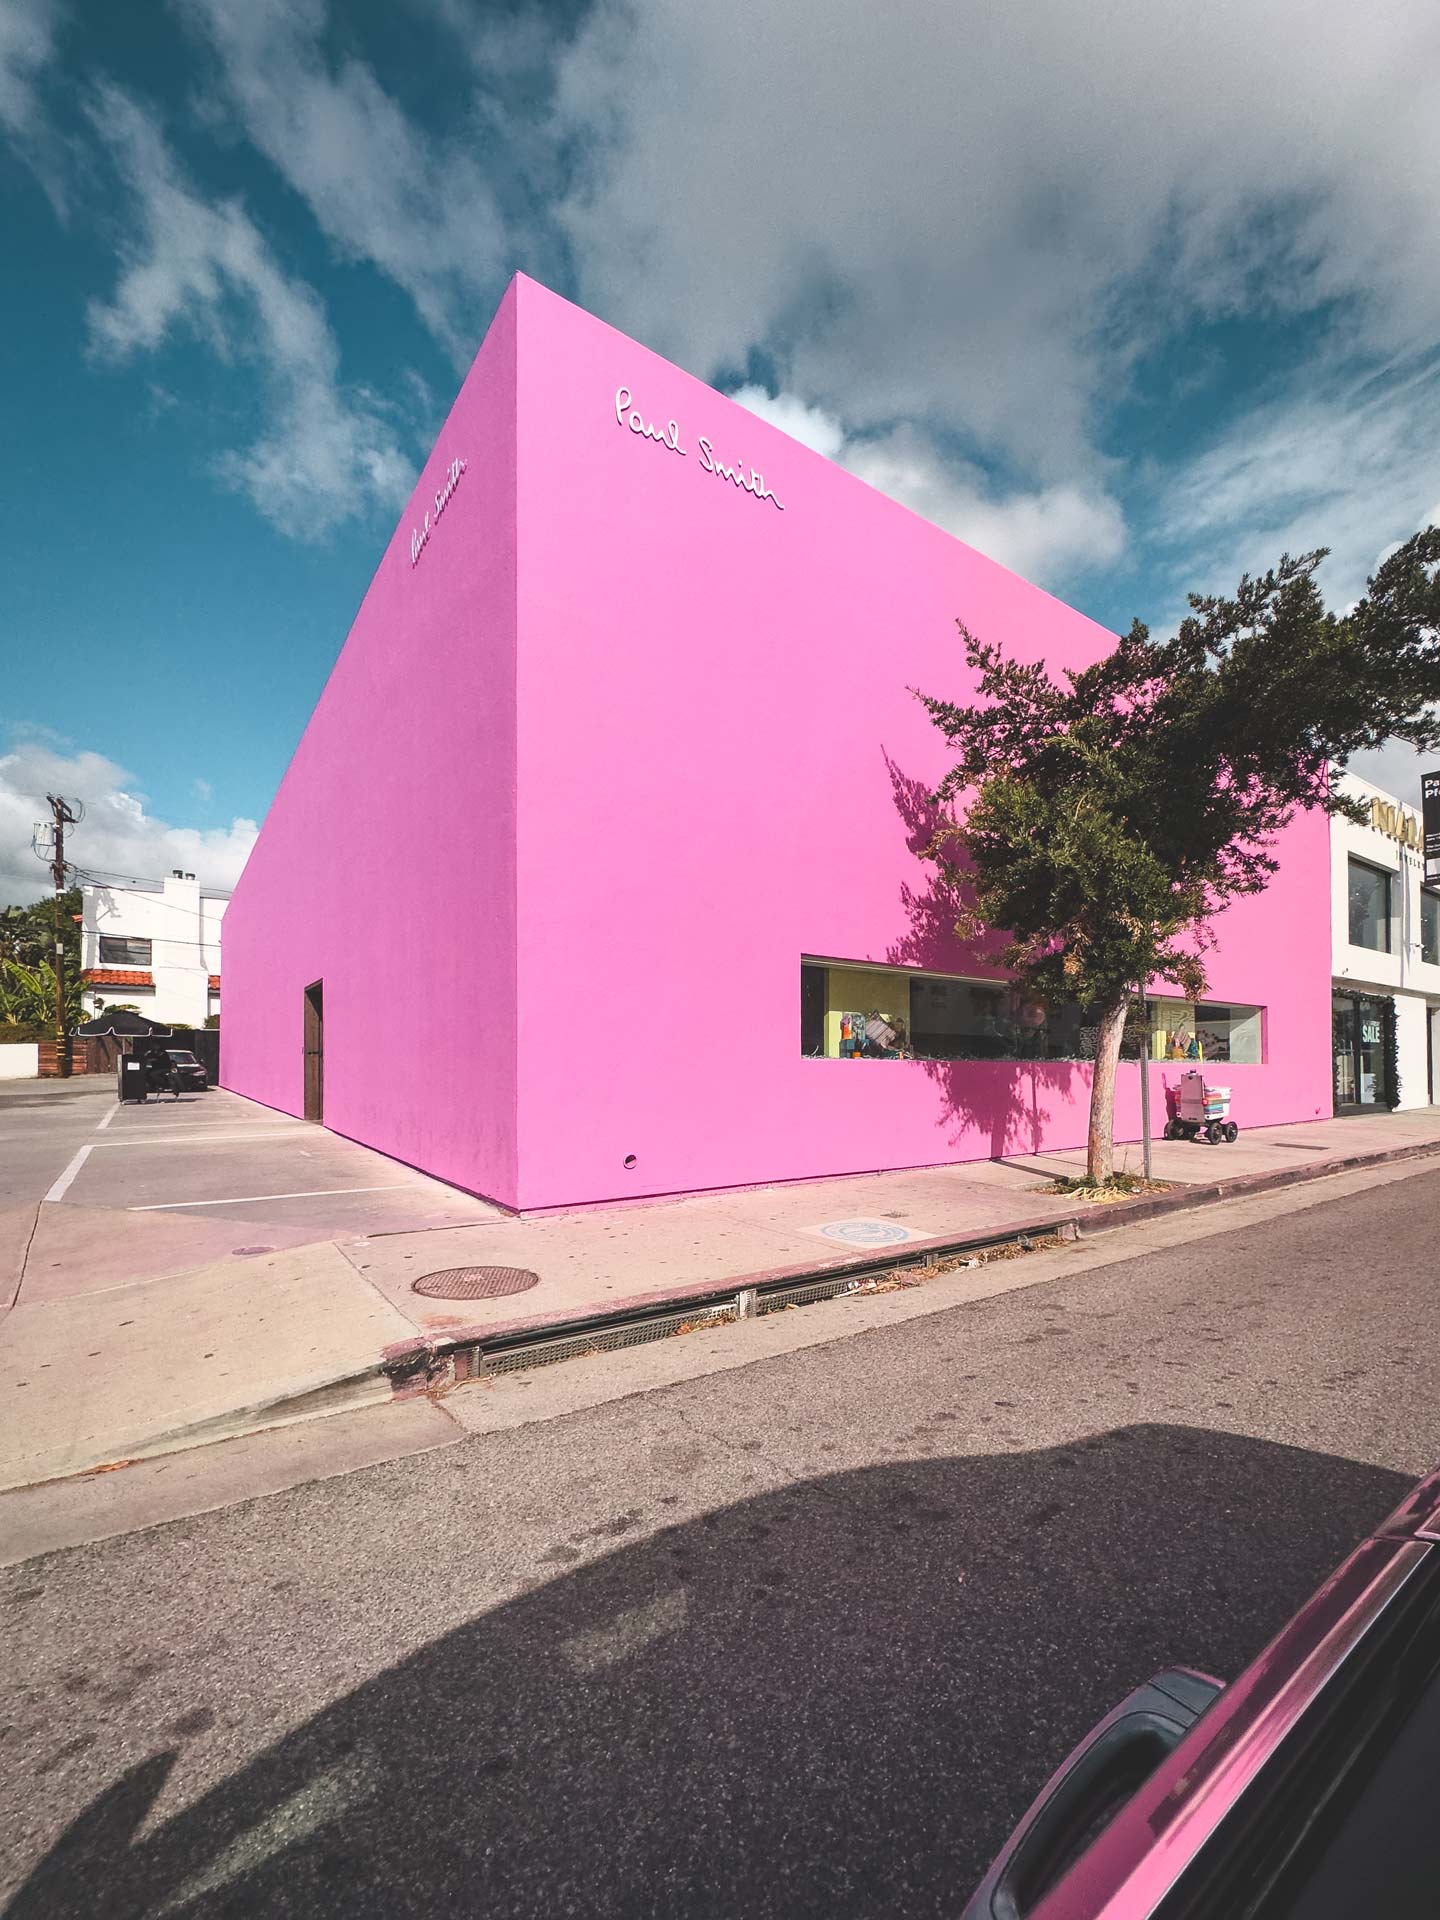 The-Pink-Wall-Melrose-Av-Los-Angeles-California